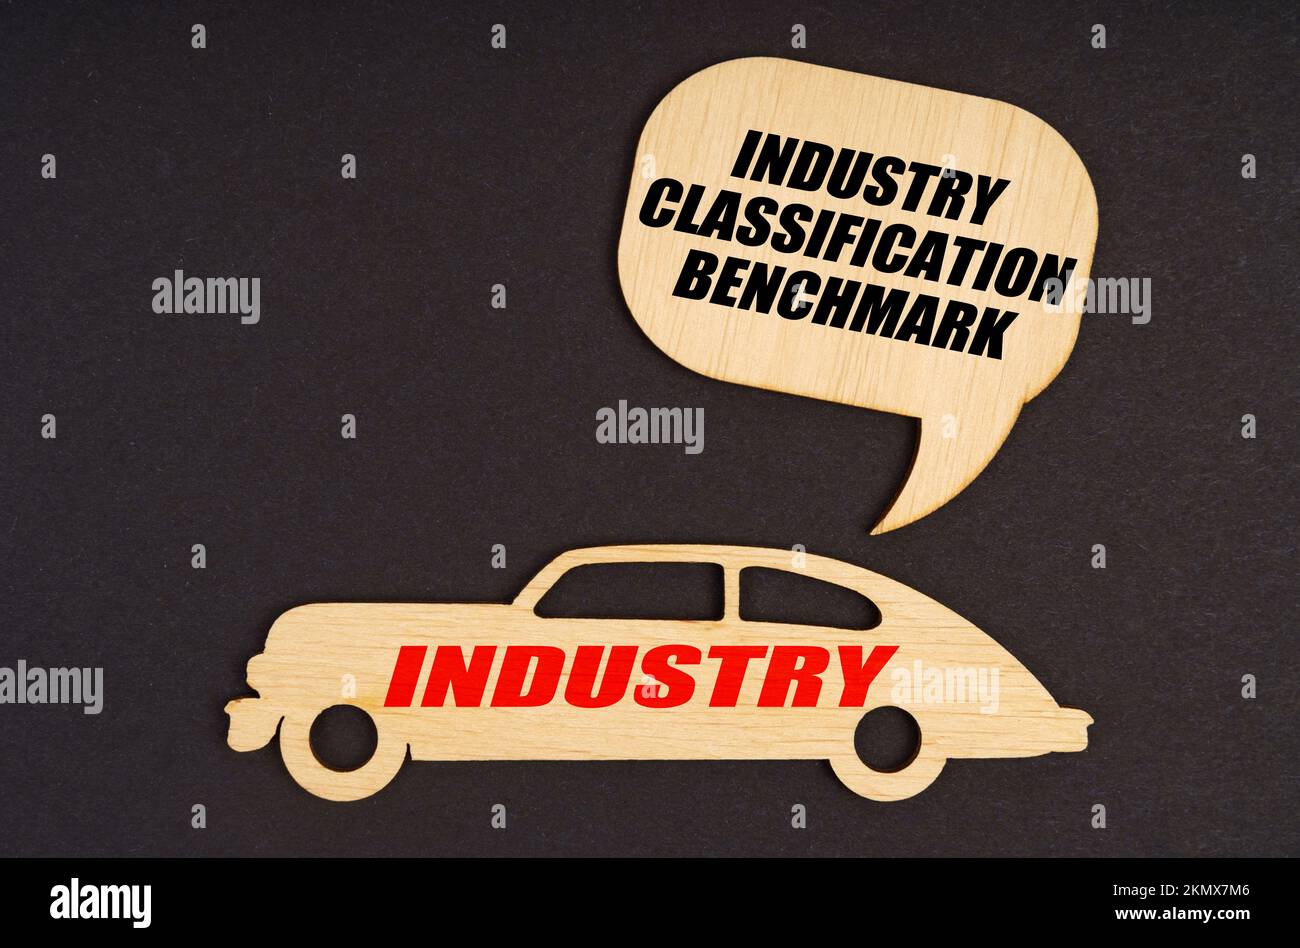 Concept de l'industrie. Sur fond noir, une voiture avec l'inscription Industrie, au-dessus d'elle une plaque avec l'inscription - Classification de l'industrie Benchmar Banque D'Images